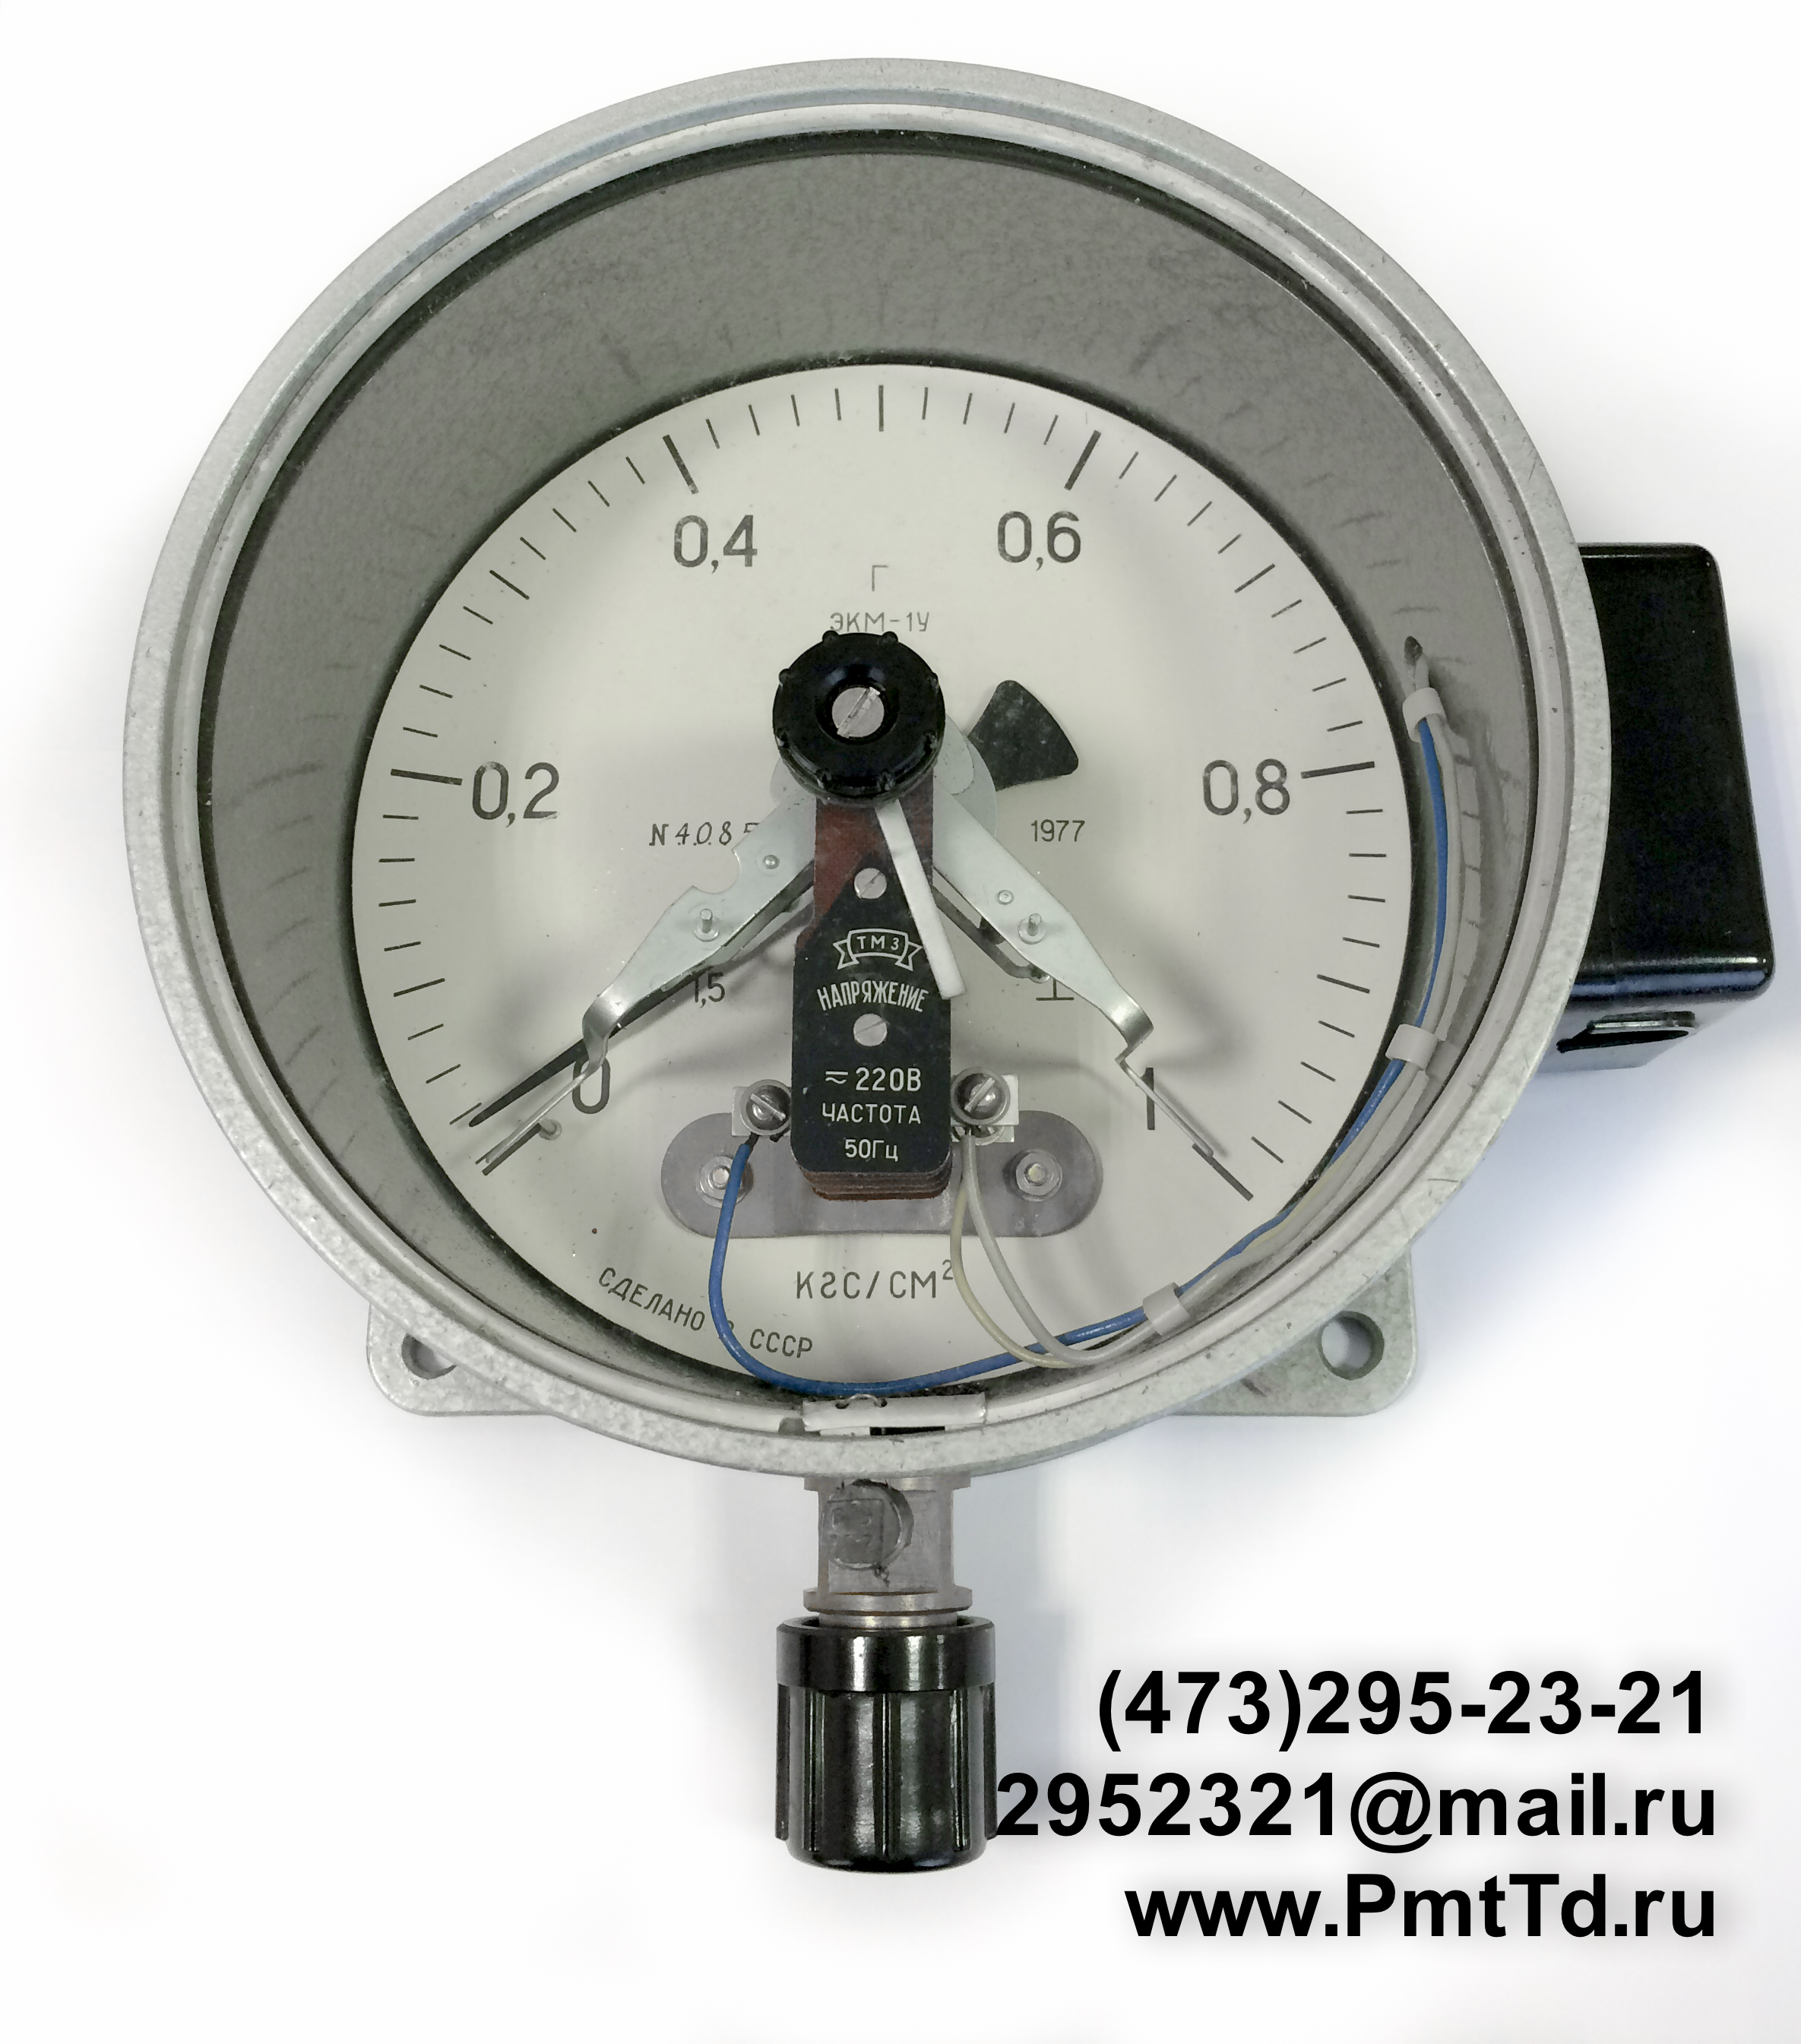 Электроконтактный манометр ЭКМ-1У 0-4 кгс/см2